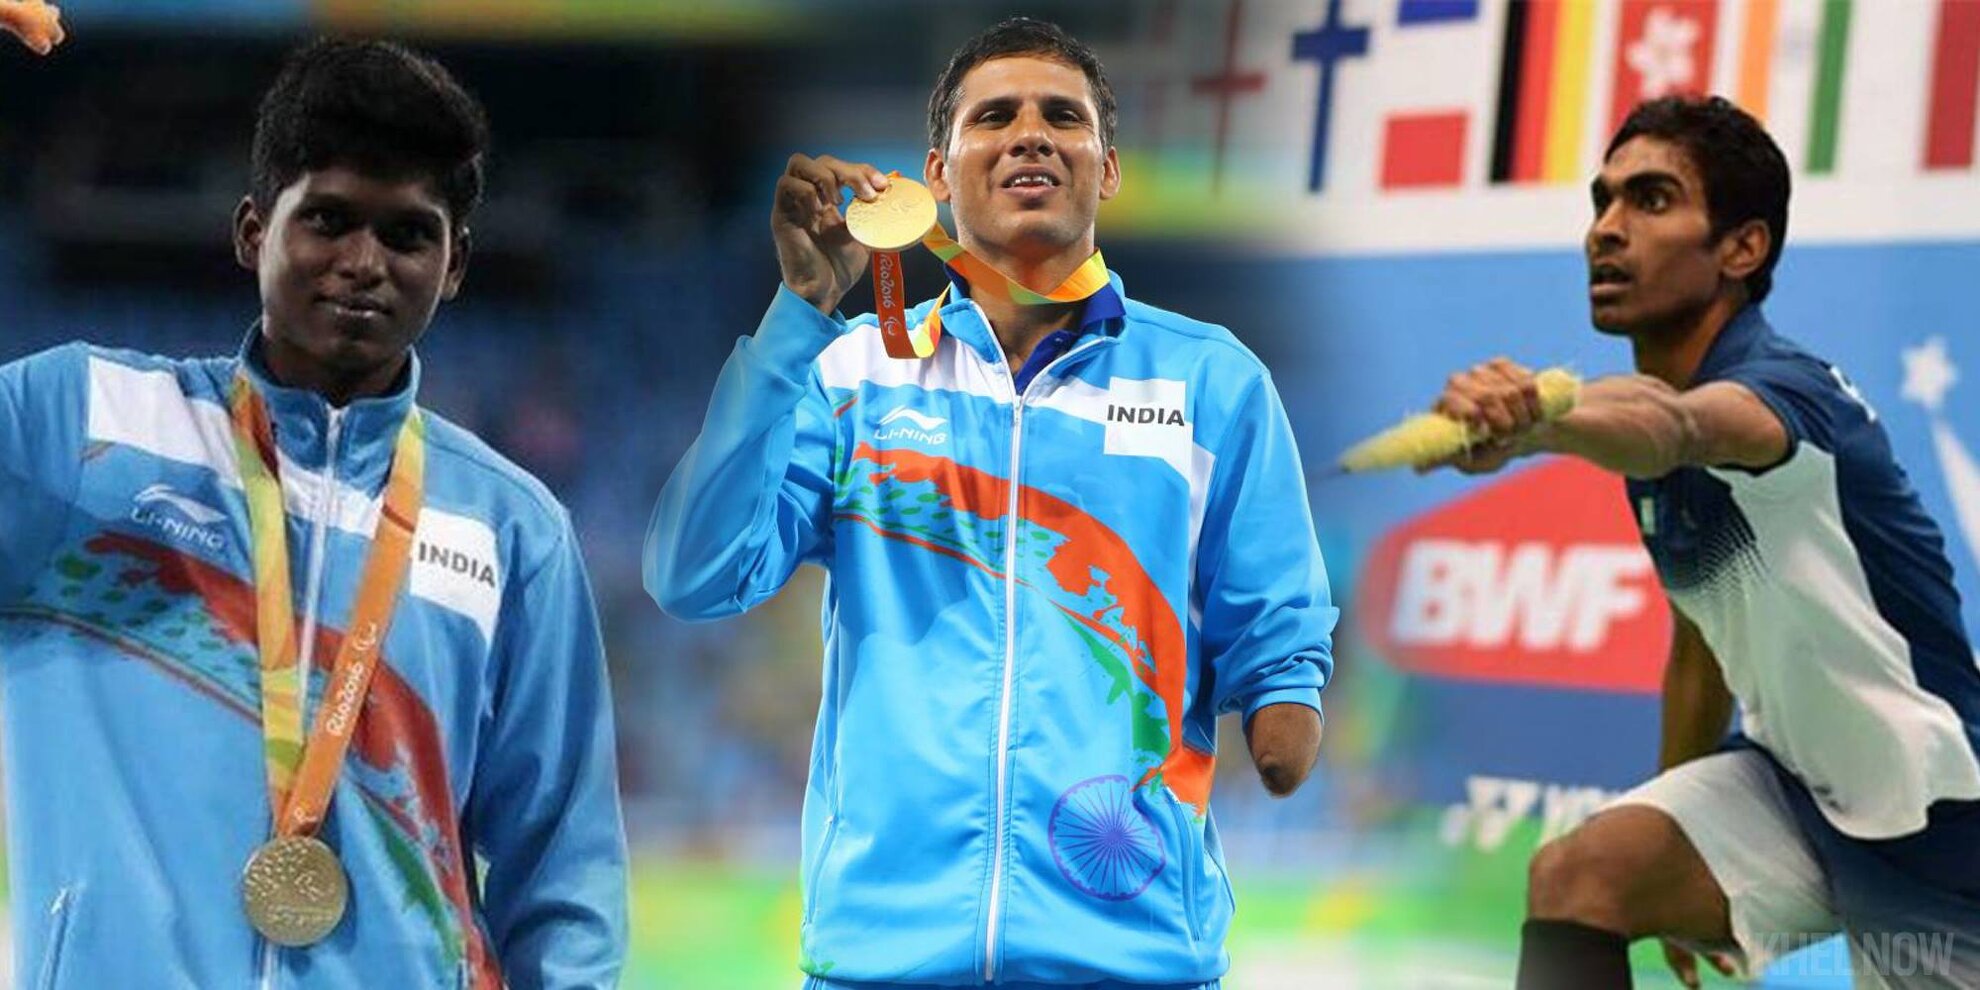 Top 10 Indian Medal Hopefuls At Tokyo Paralympics